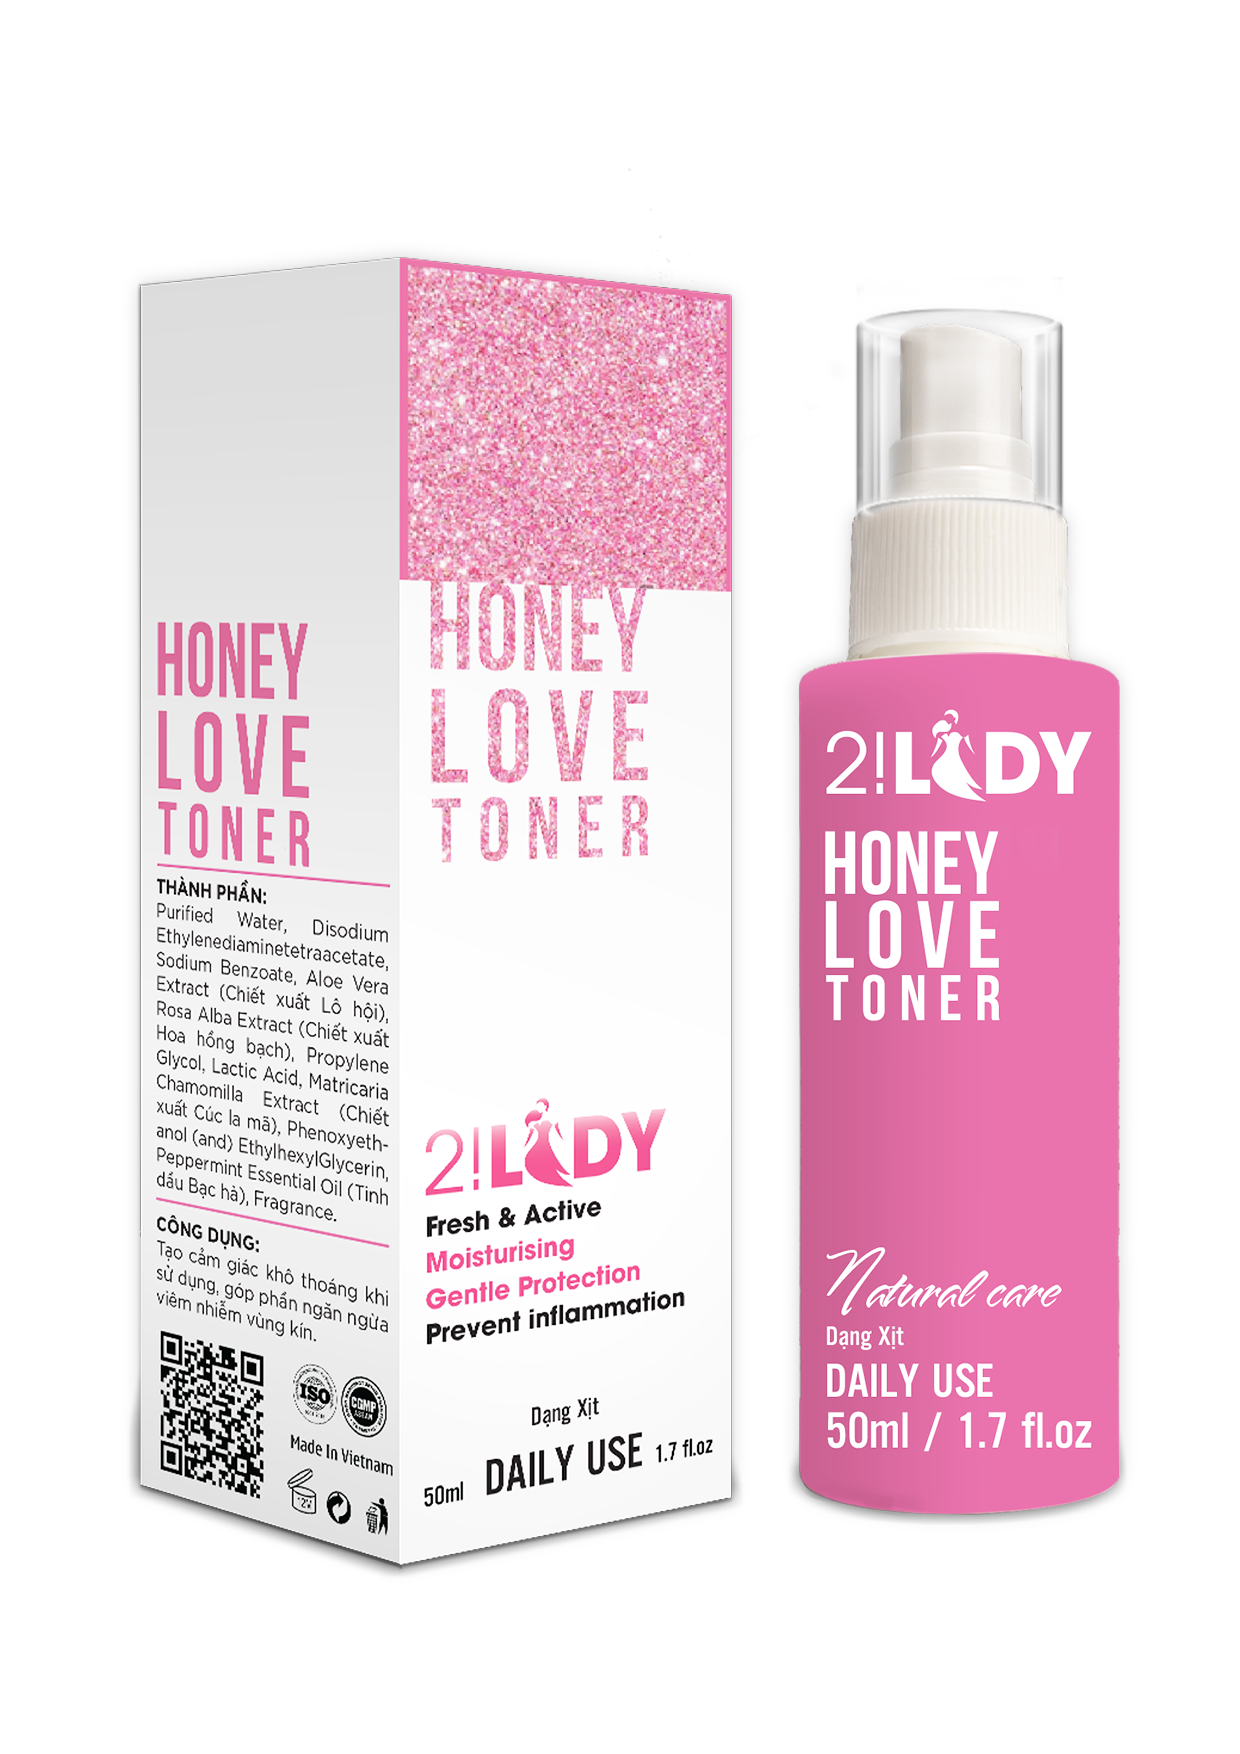 Nước Hoa “Cô Bé” 2! Lady Honey Love Toner – Món Quà Từ Magic Skin